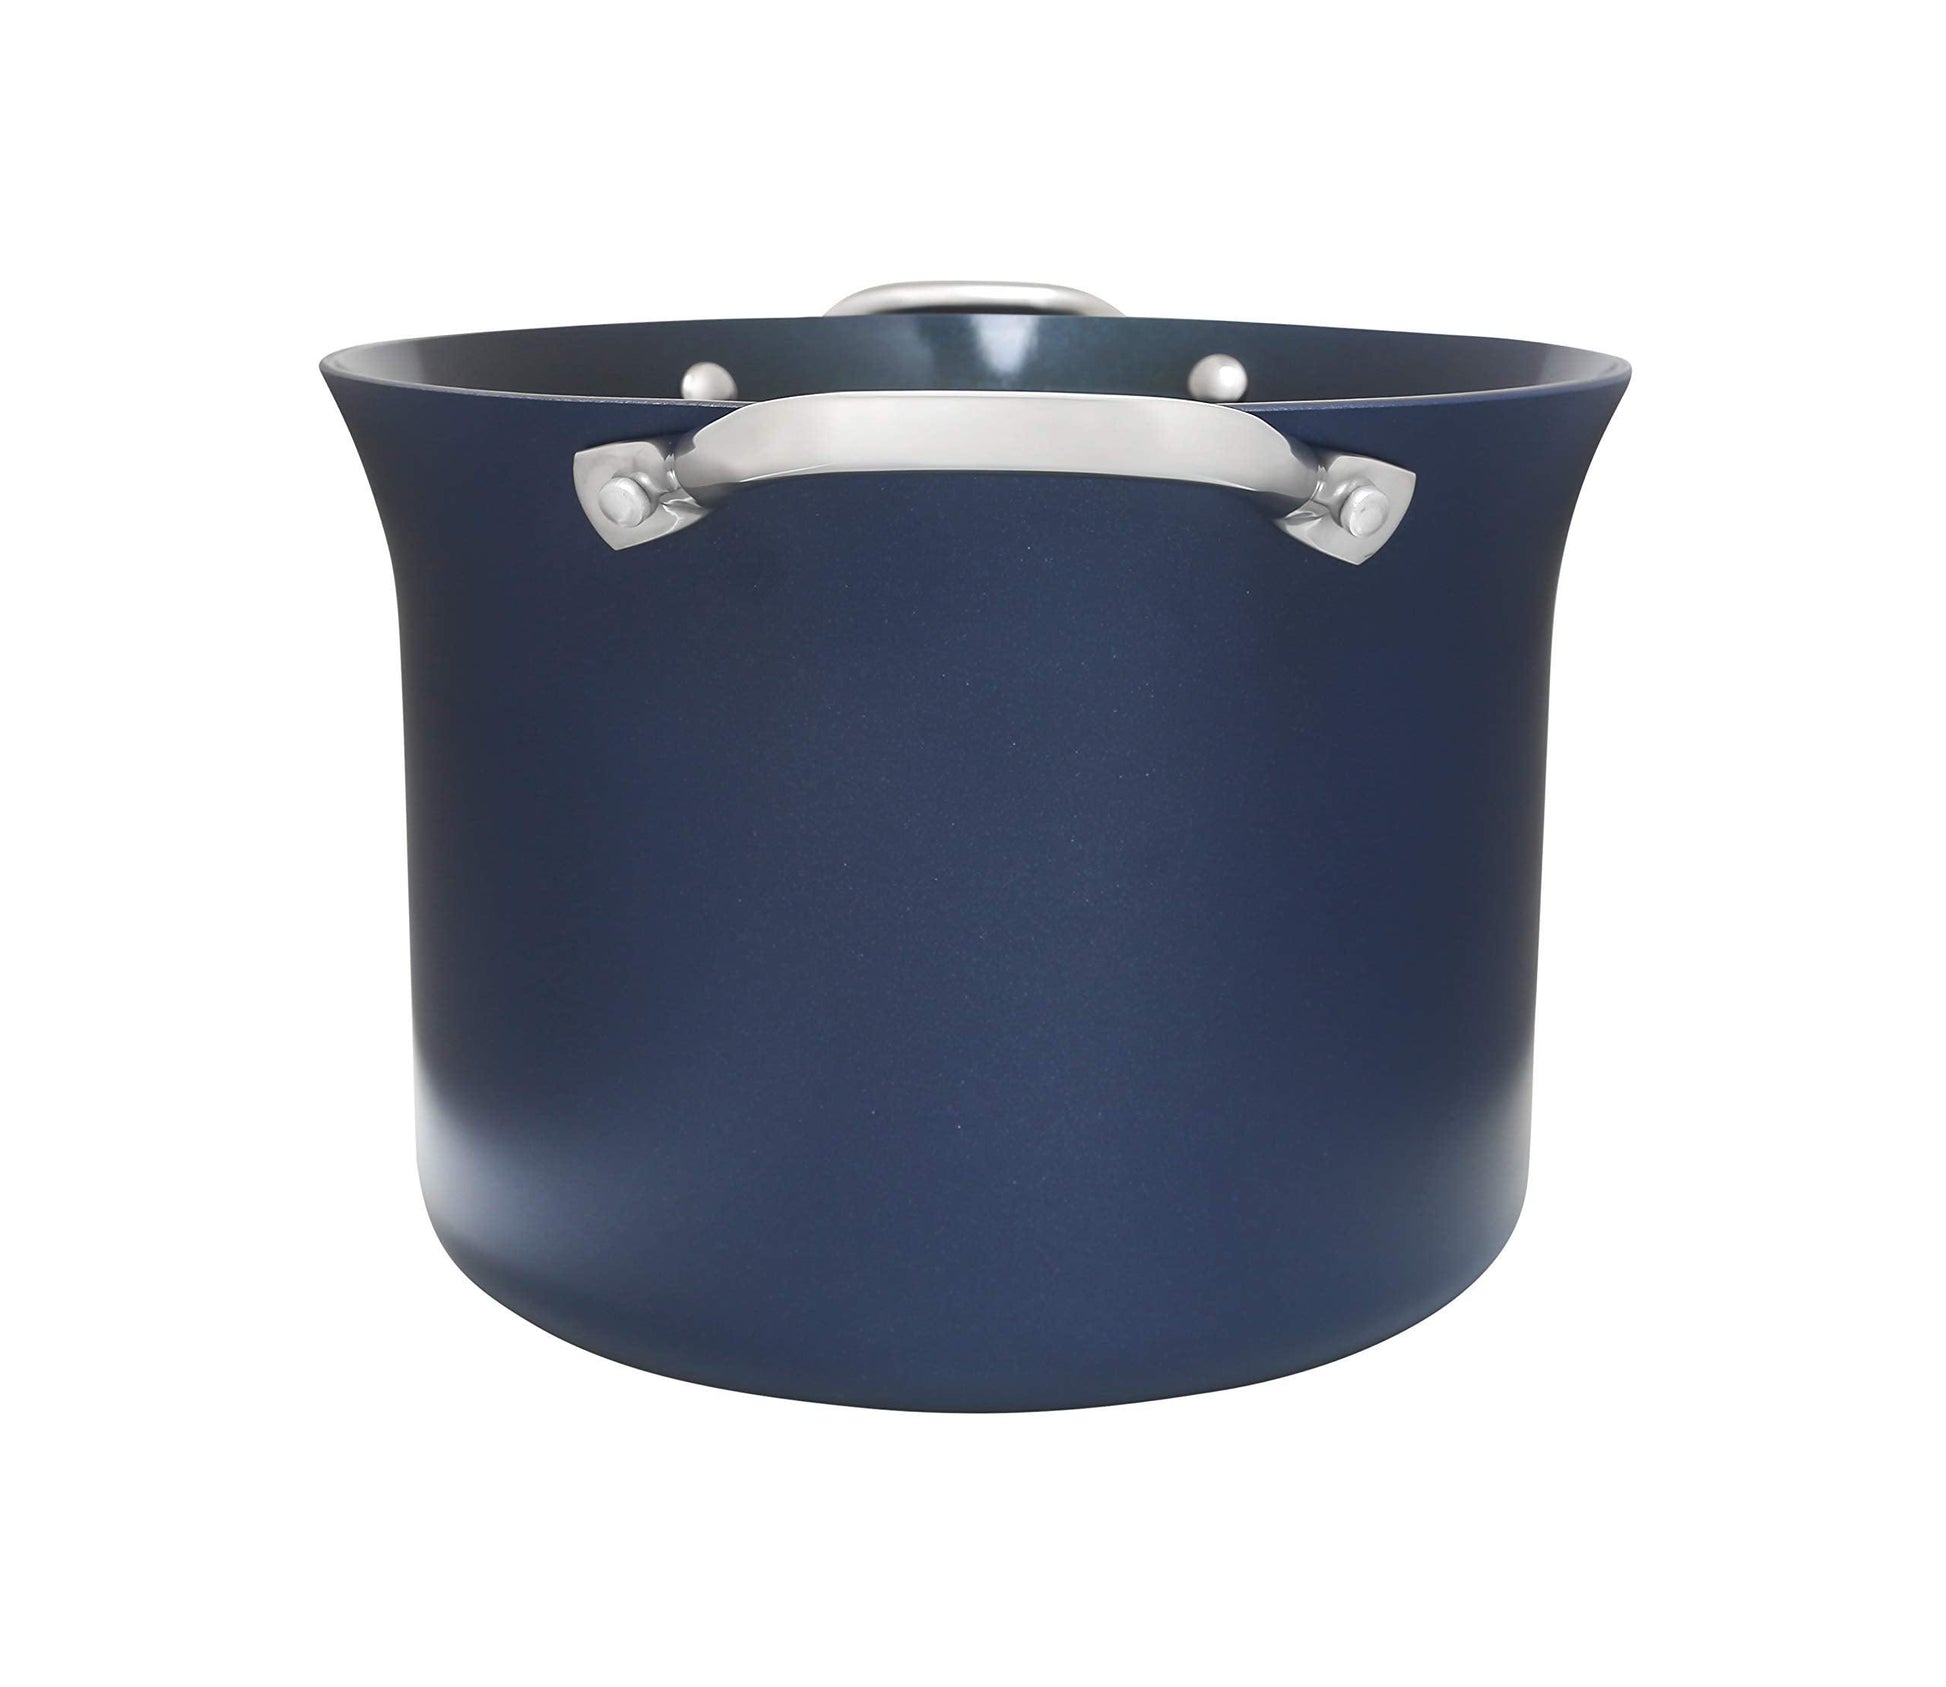 CONCORD Sapphire Nonstick 7 Quart Stock Pot Cookware Set (Induction Compatible) Blue - CookCave